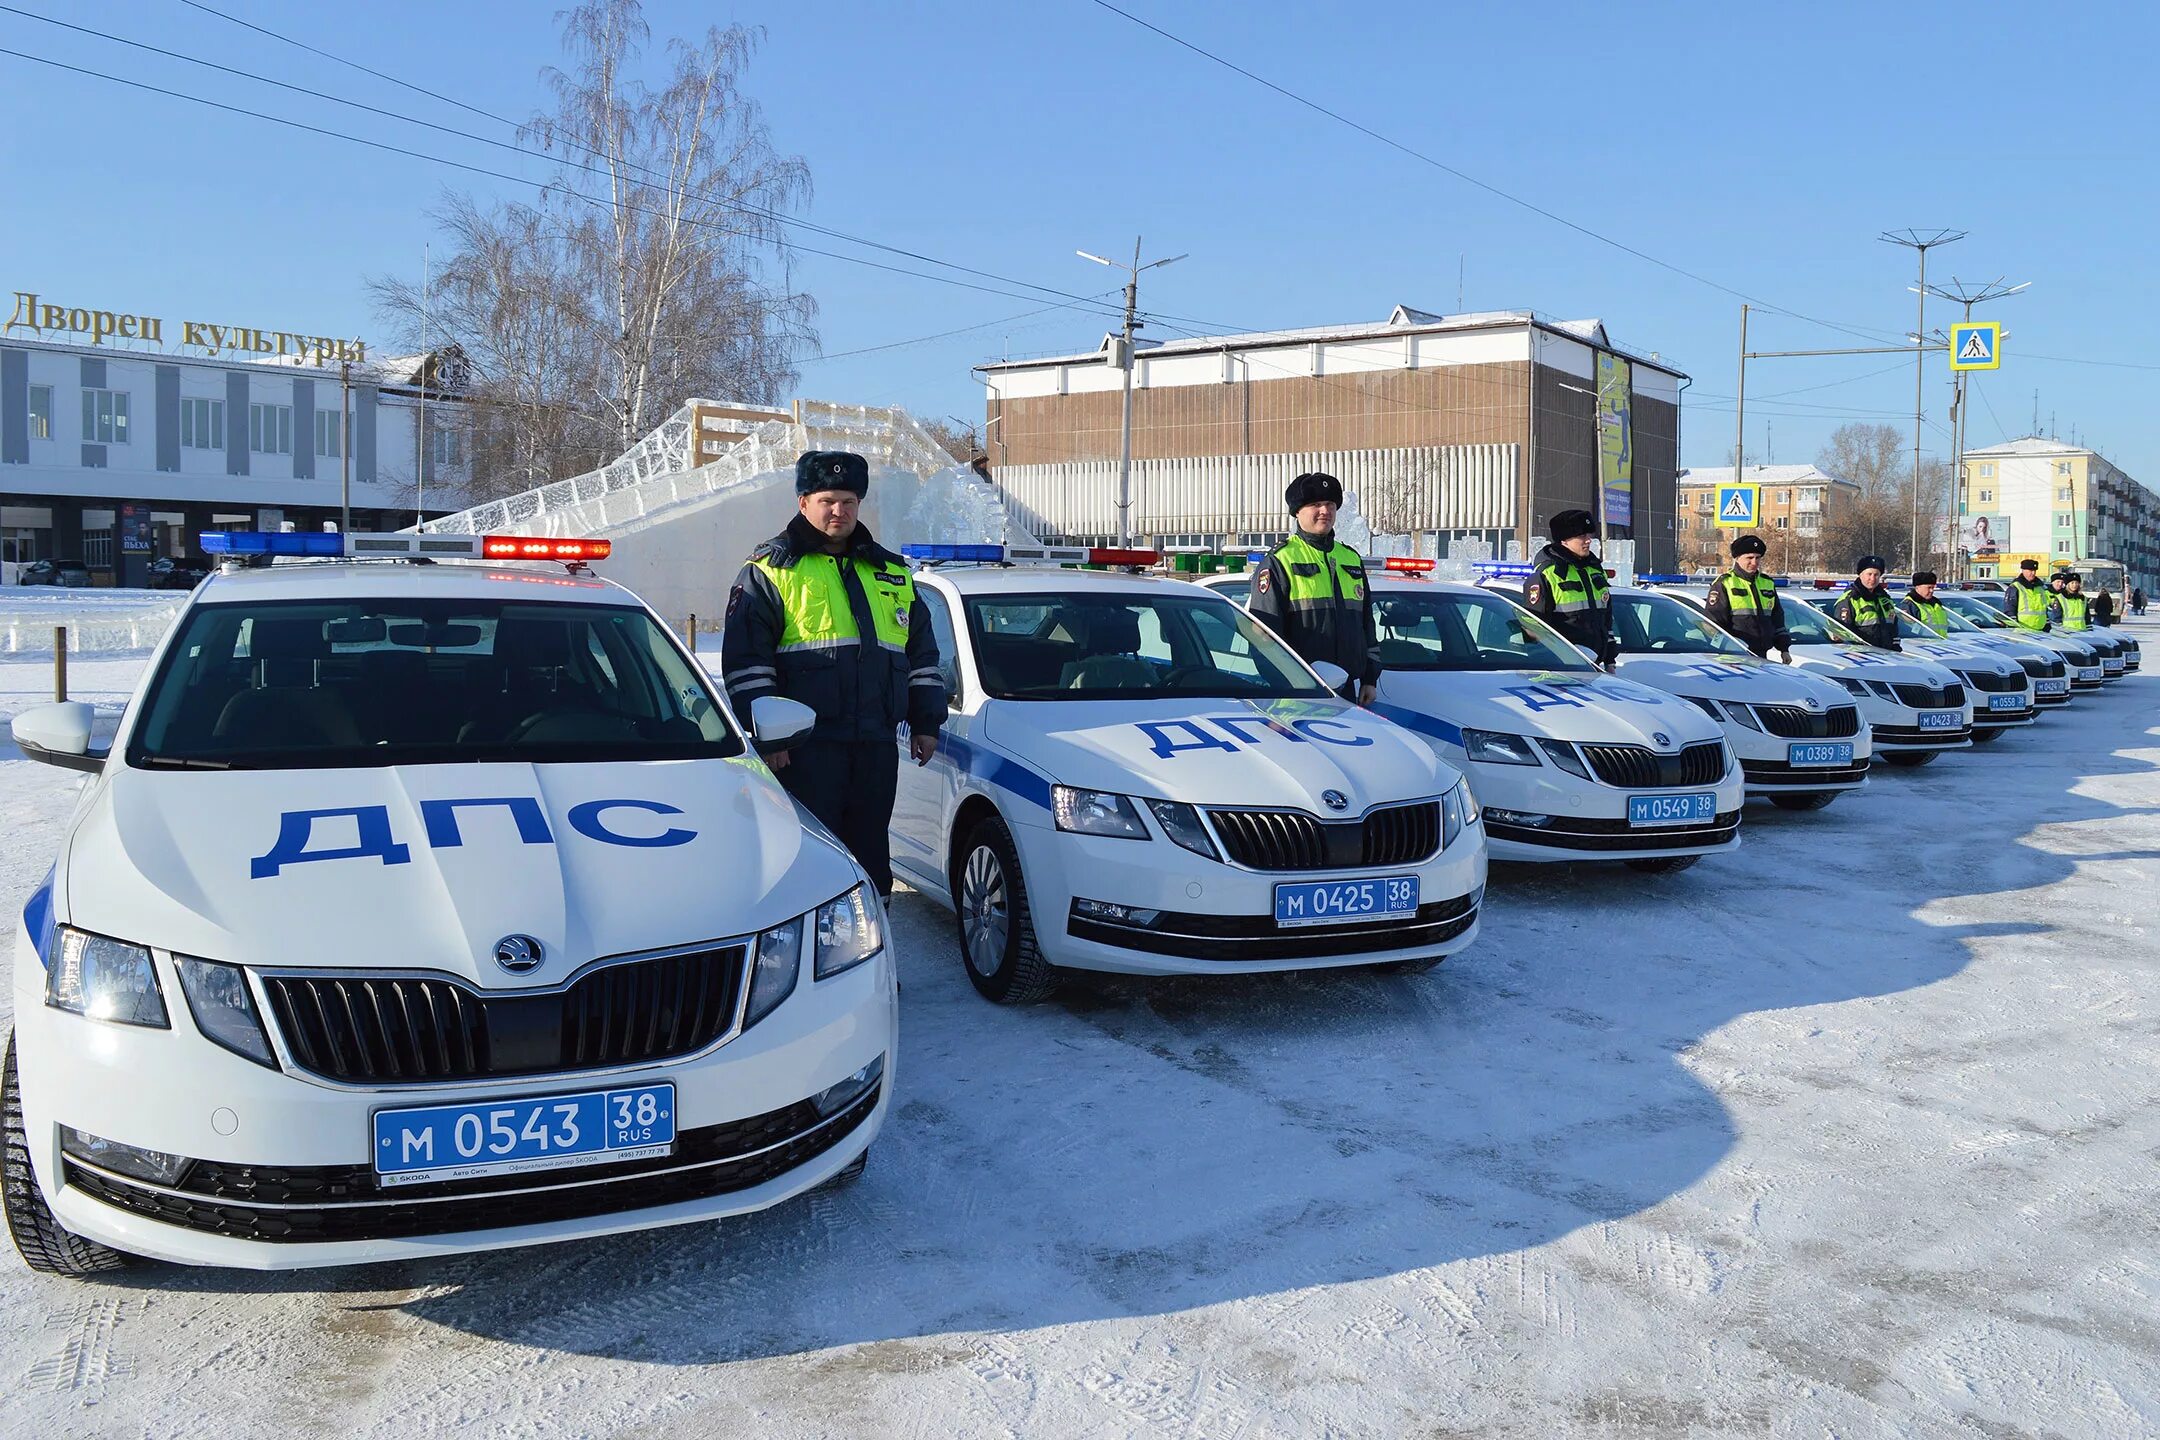 Автопарк полиции. Skoda Octavia 2020 Police. Автопарк ДПС России.